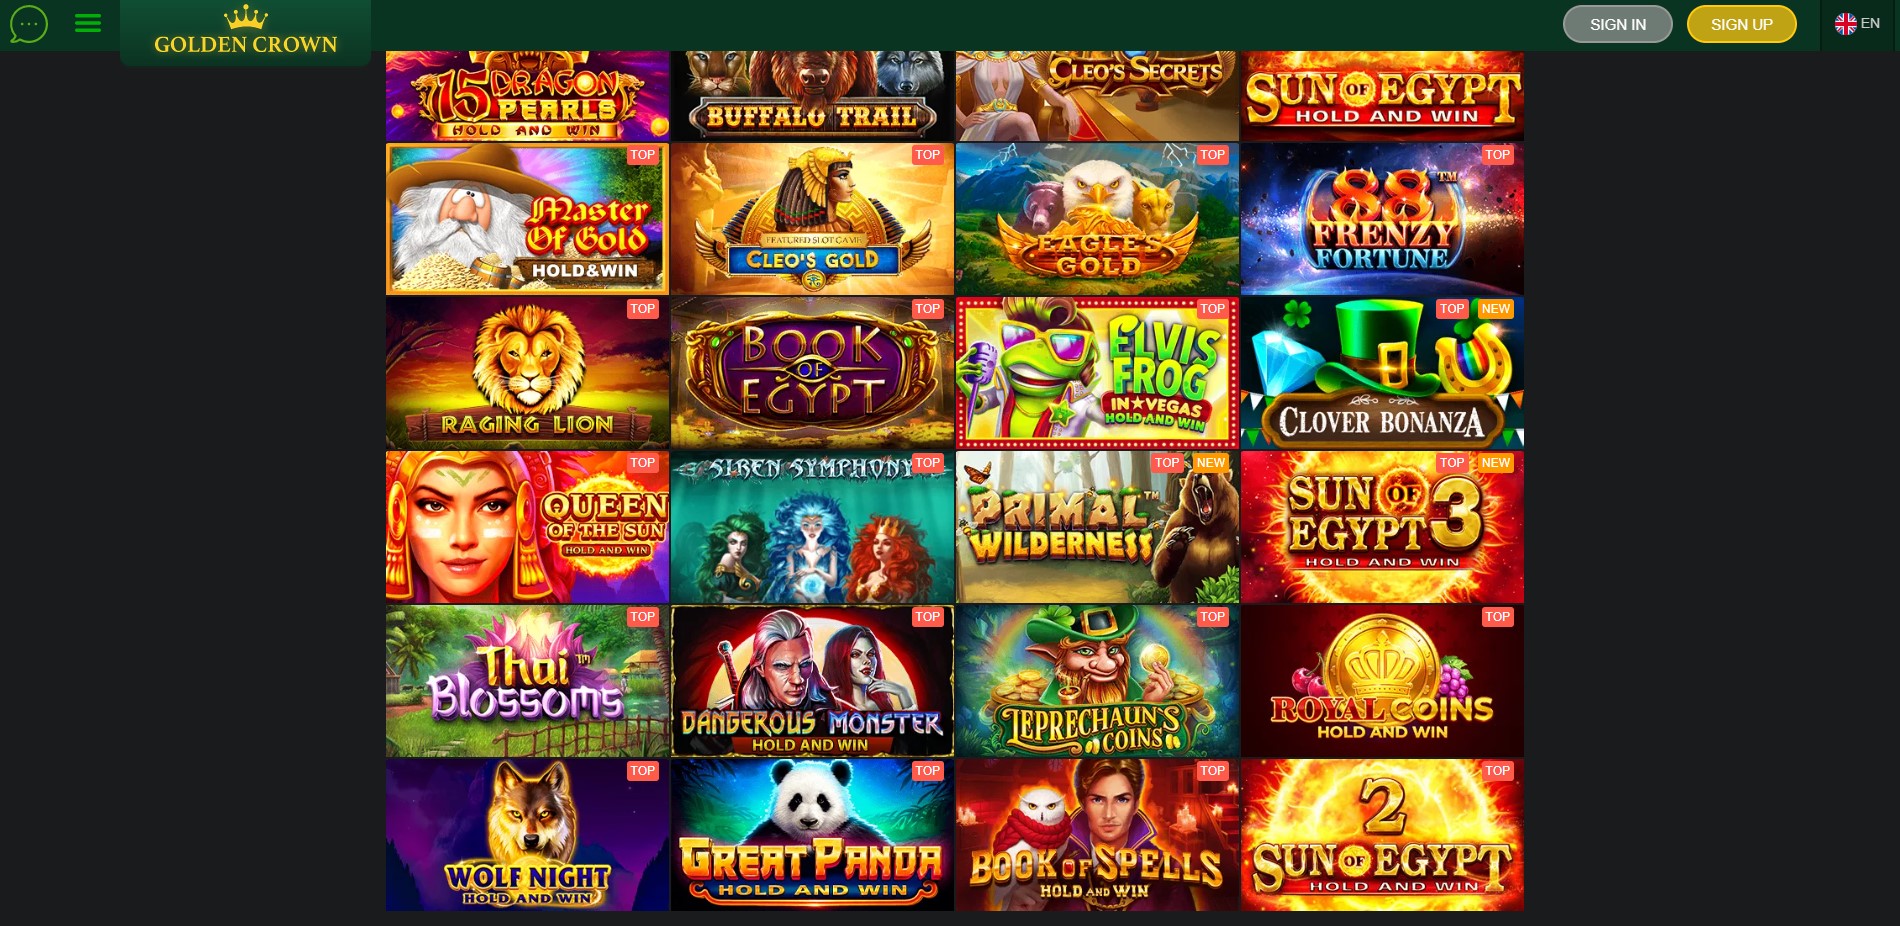 Golden Crown Casino Games